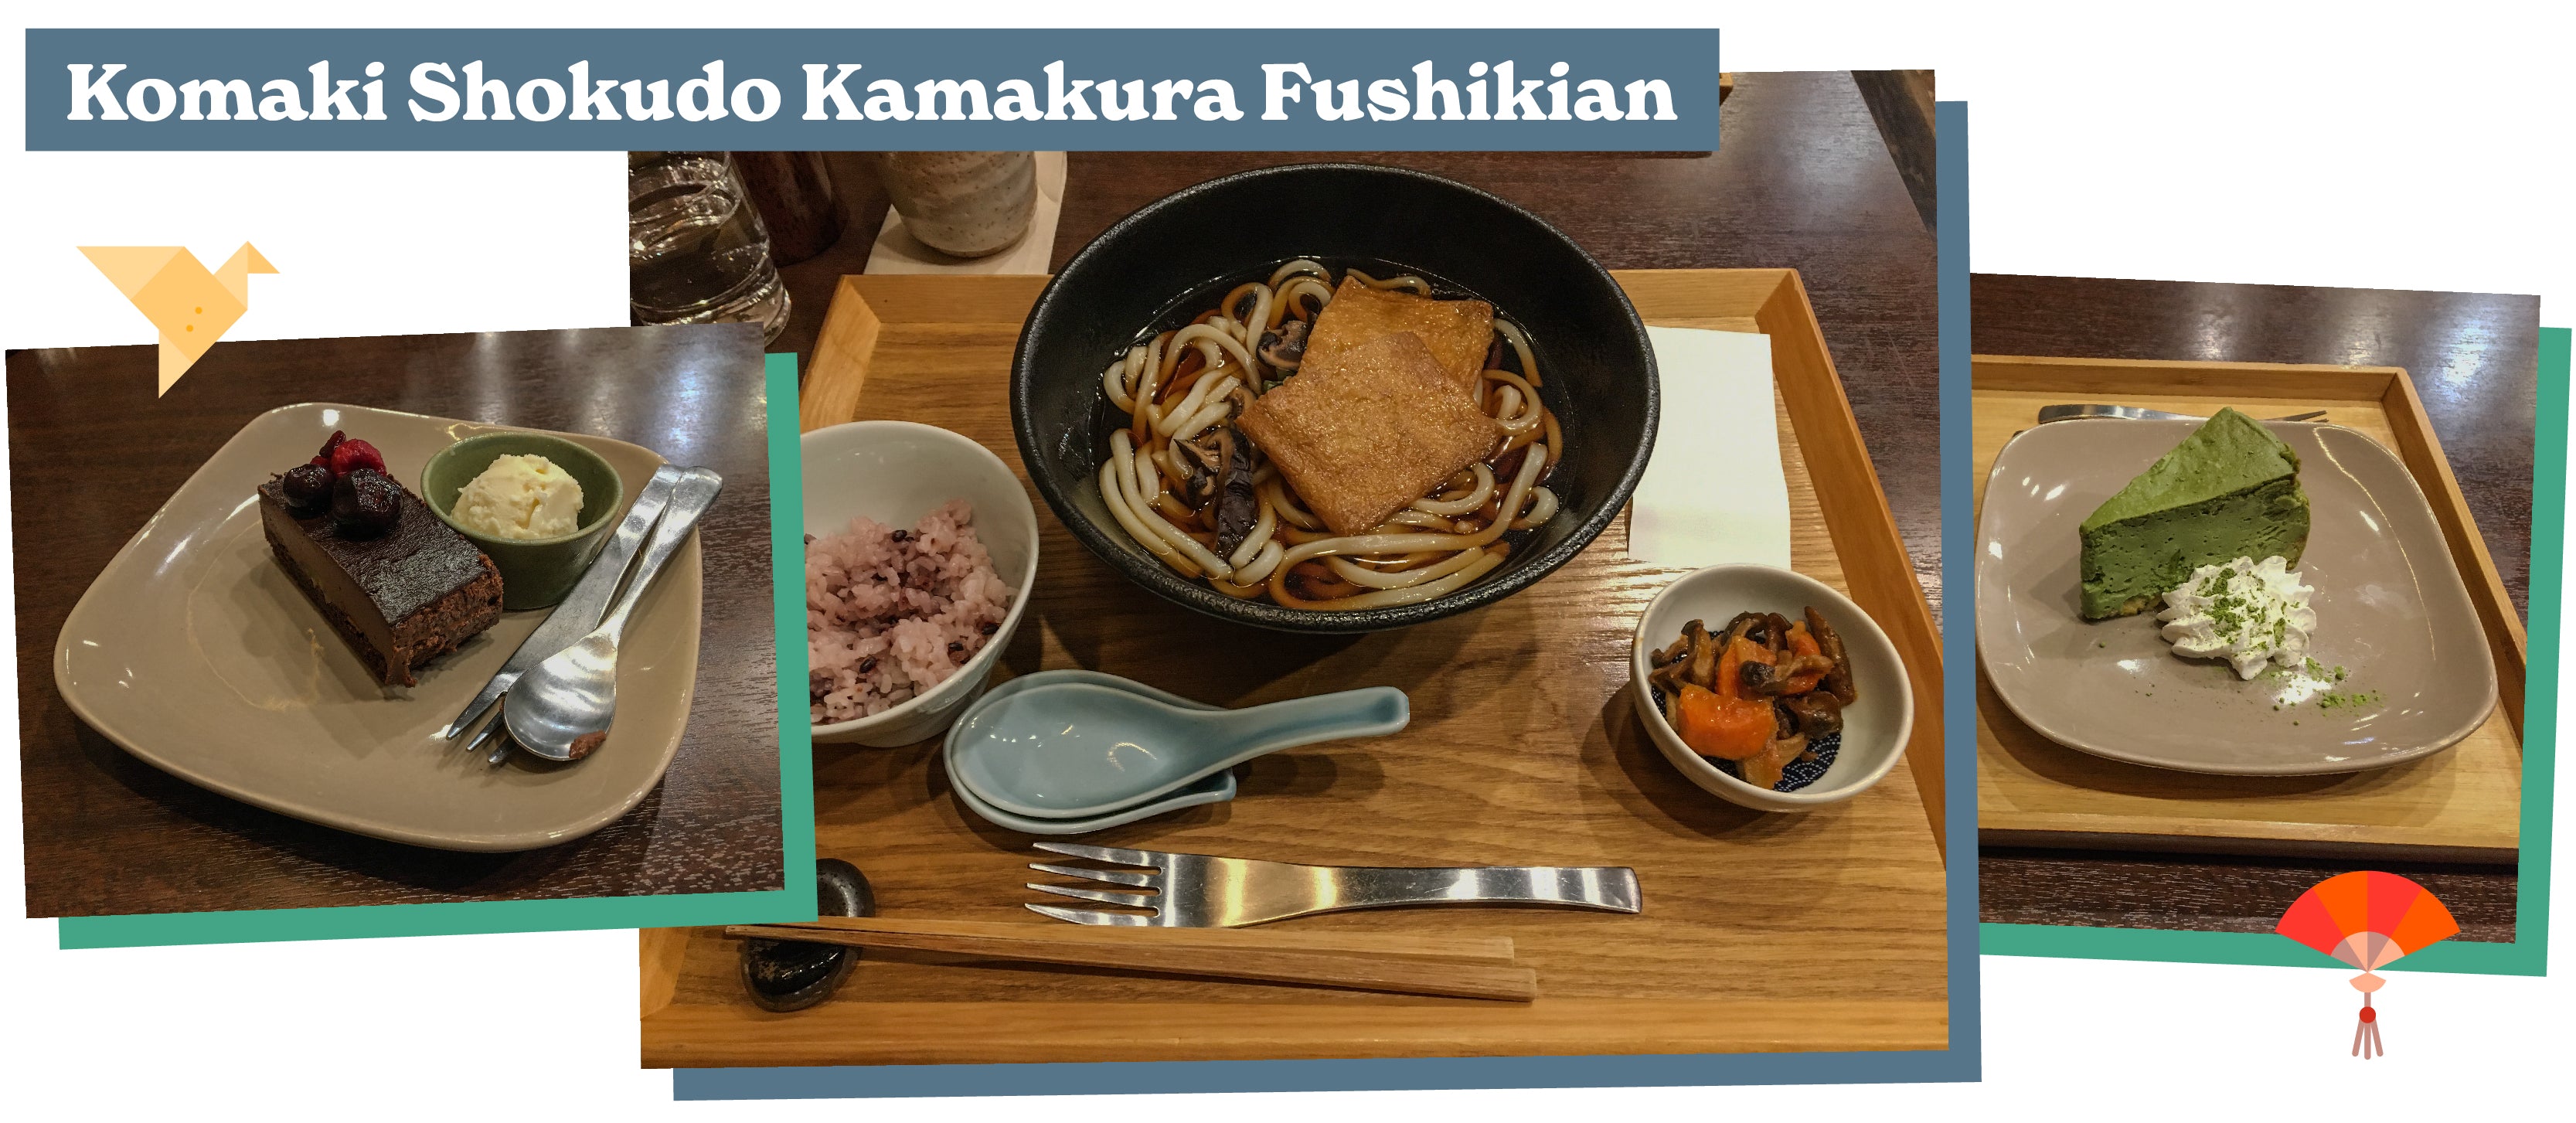 Komaki Shokudo Kamakura Fushikian vegan restaurant